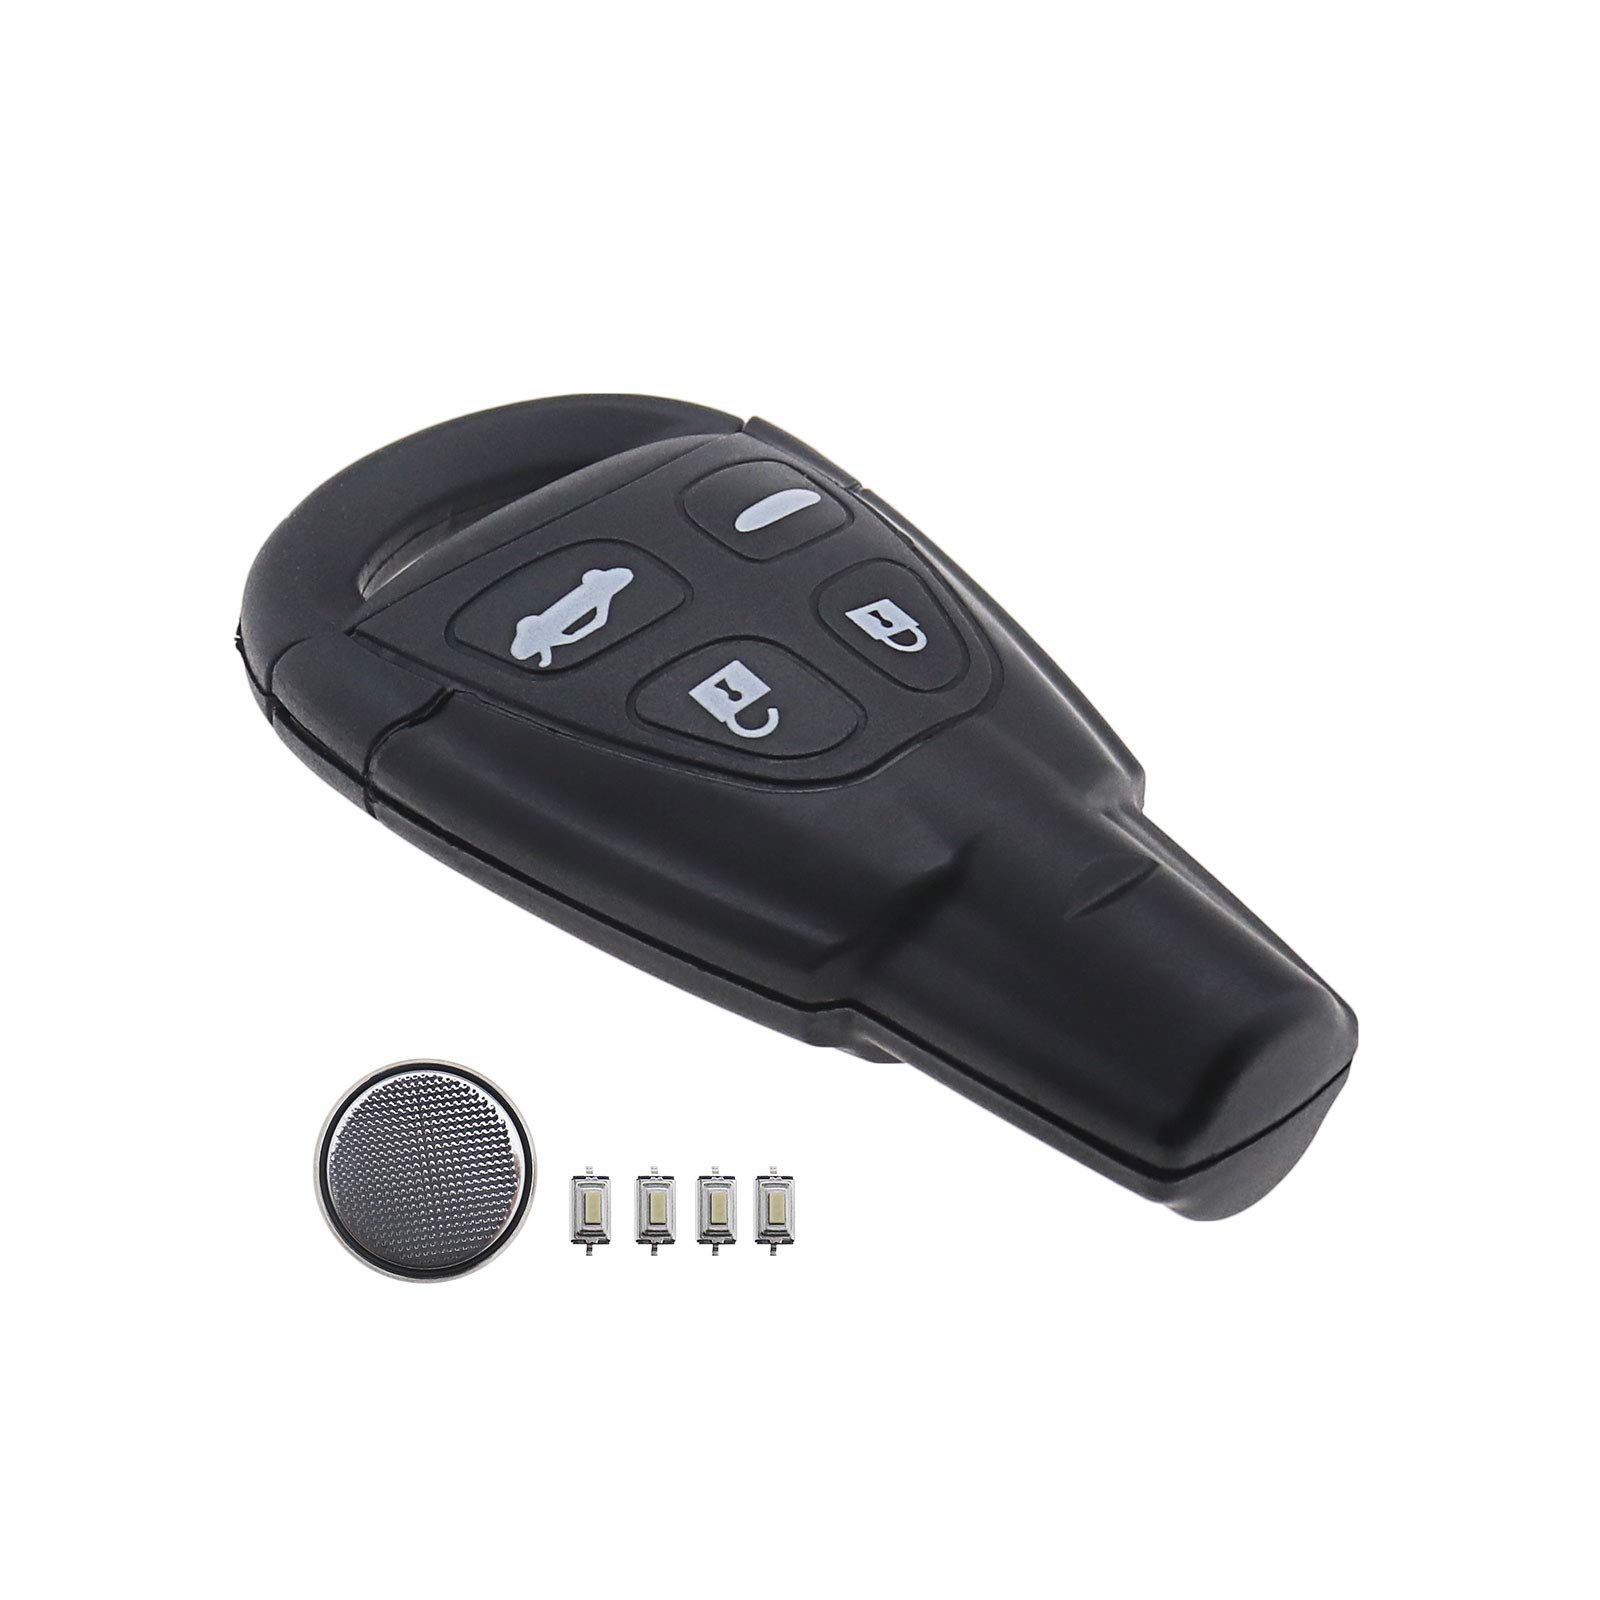 Schlüsselanhänger Gehäuse Reparatursatz, kompatibel mit SAAB 9-3 2003-201, 9-5 2003-2011 Funkschlüssel - 4 Tasten (ungeschnittene Klinge) von OTOTEC